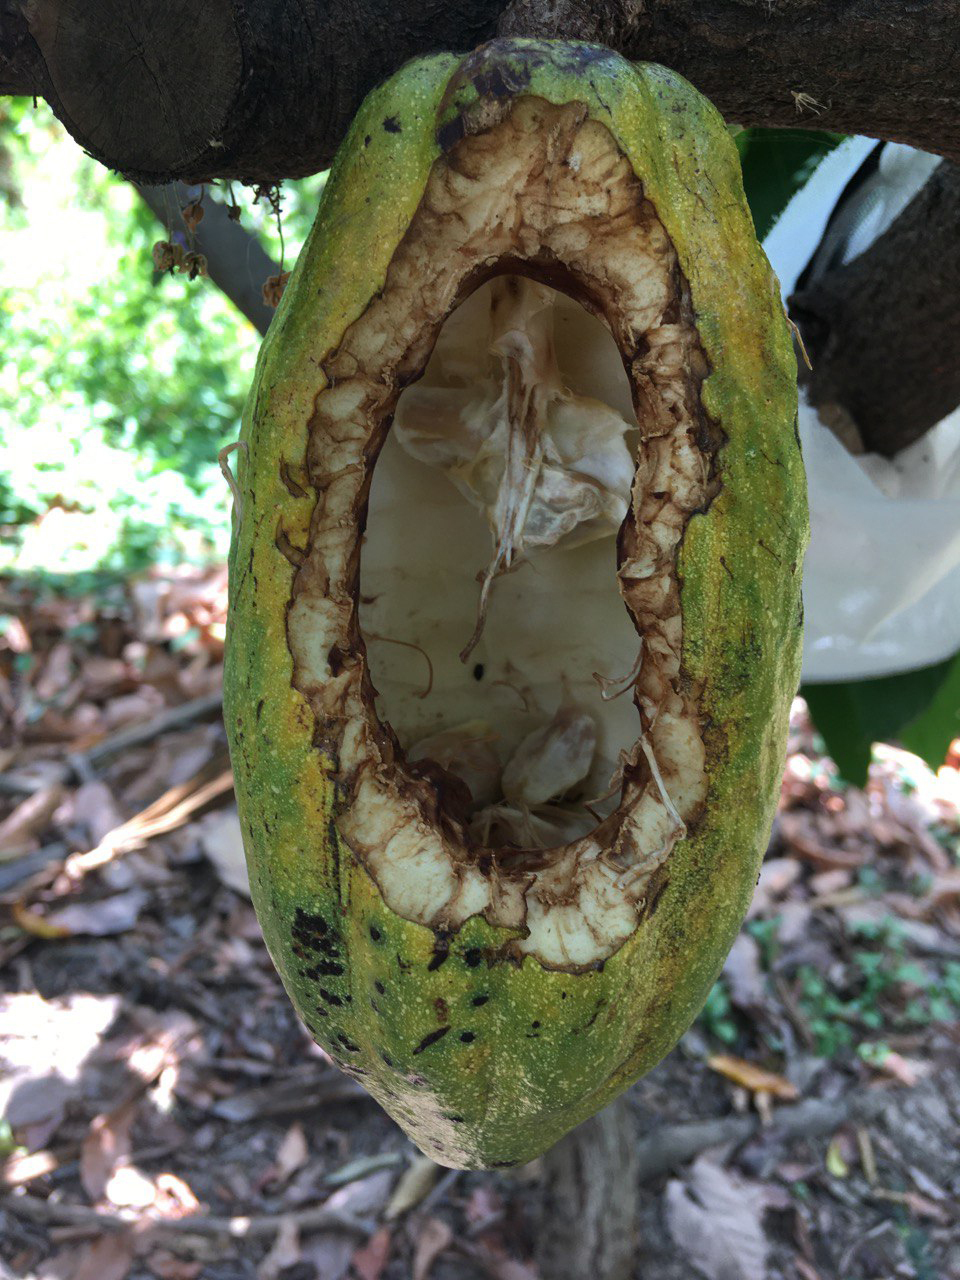 Eichhörnchen fressen Kakaosamen bevorzugt, wenn die Früchte fast reif sind. Hier zu sehen ist eine Kakaofrucht, deren Schale von einem Eichhörnchen angeknabbert wurde. Die Samen wurden von dem Tier vollständig entfernt.